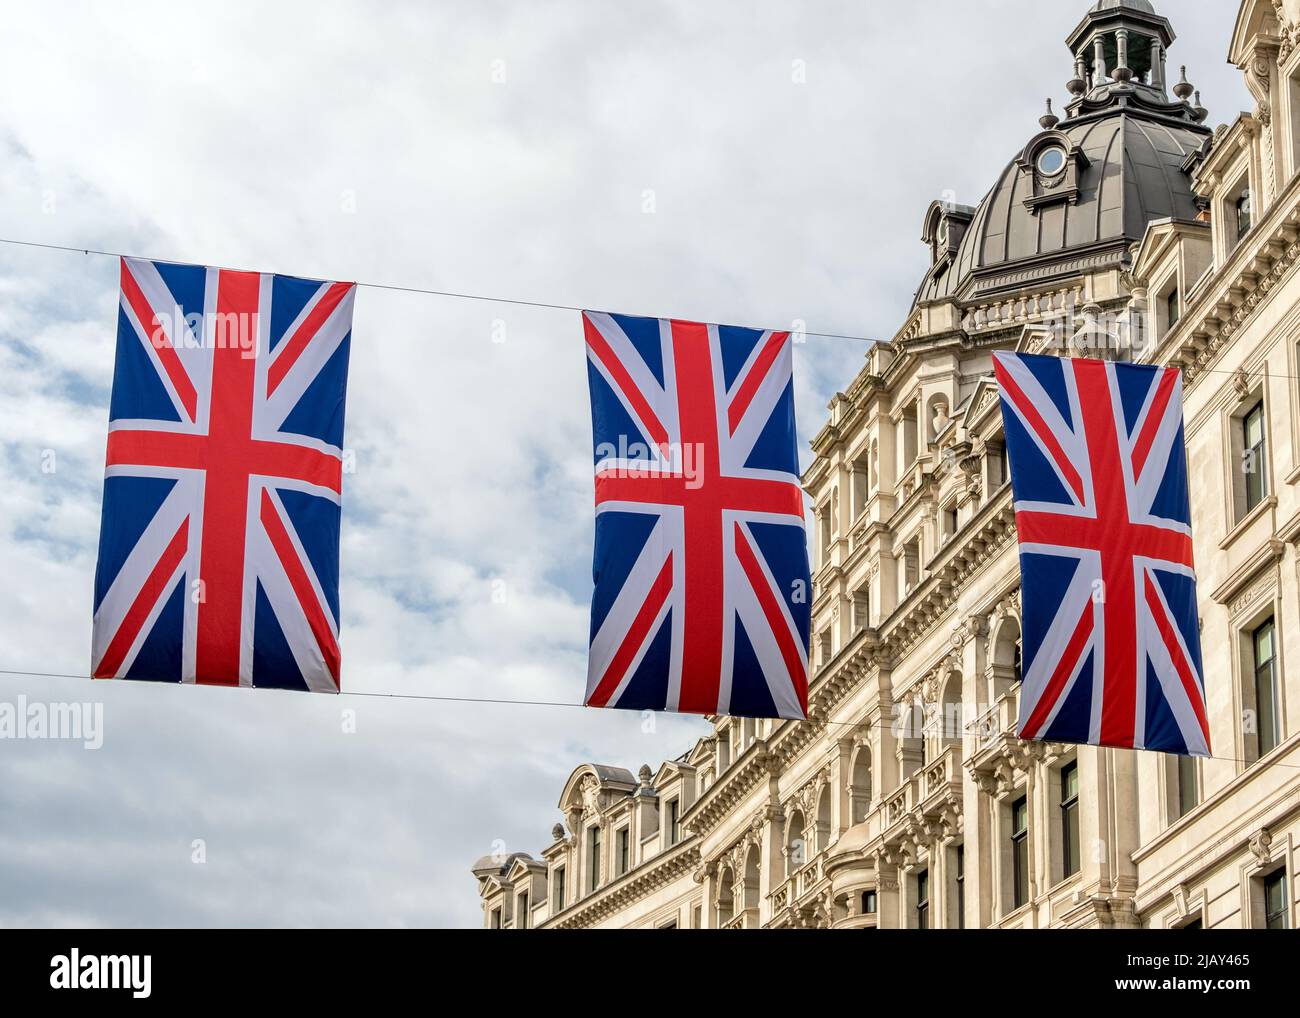 Des drapeaux Union Jack sont suspendus à Regent Street, Londres, pour le Jubilé de platine de la Reine en 2022. Banque D'Images